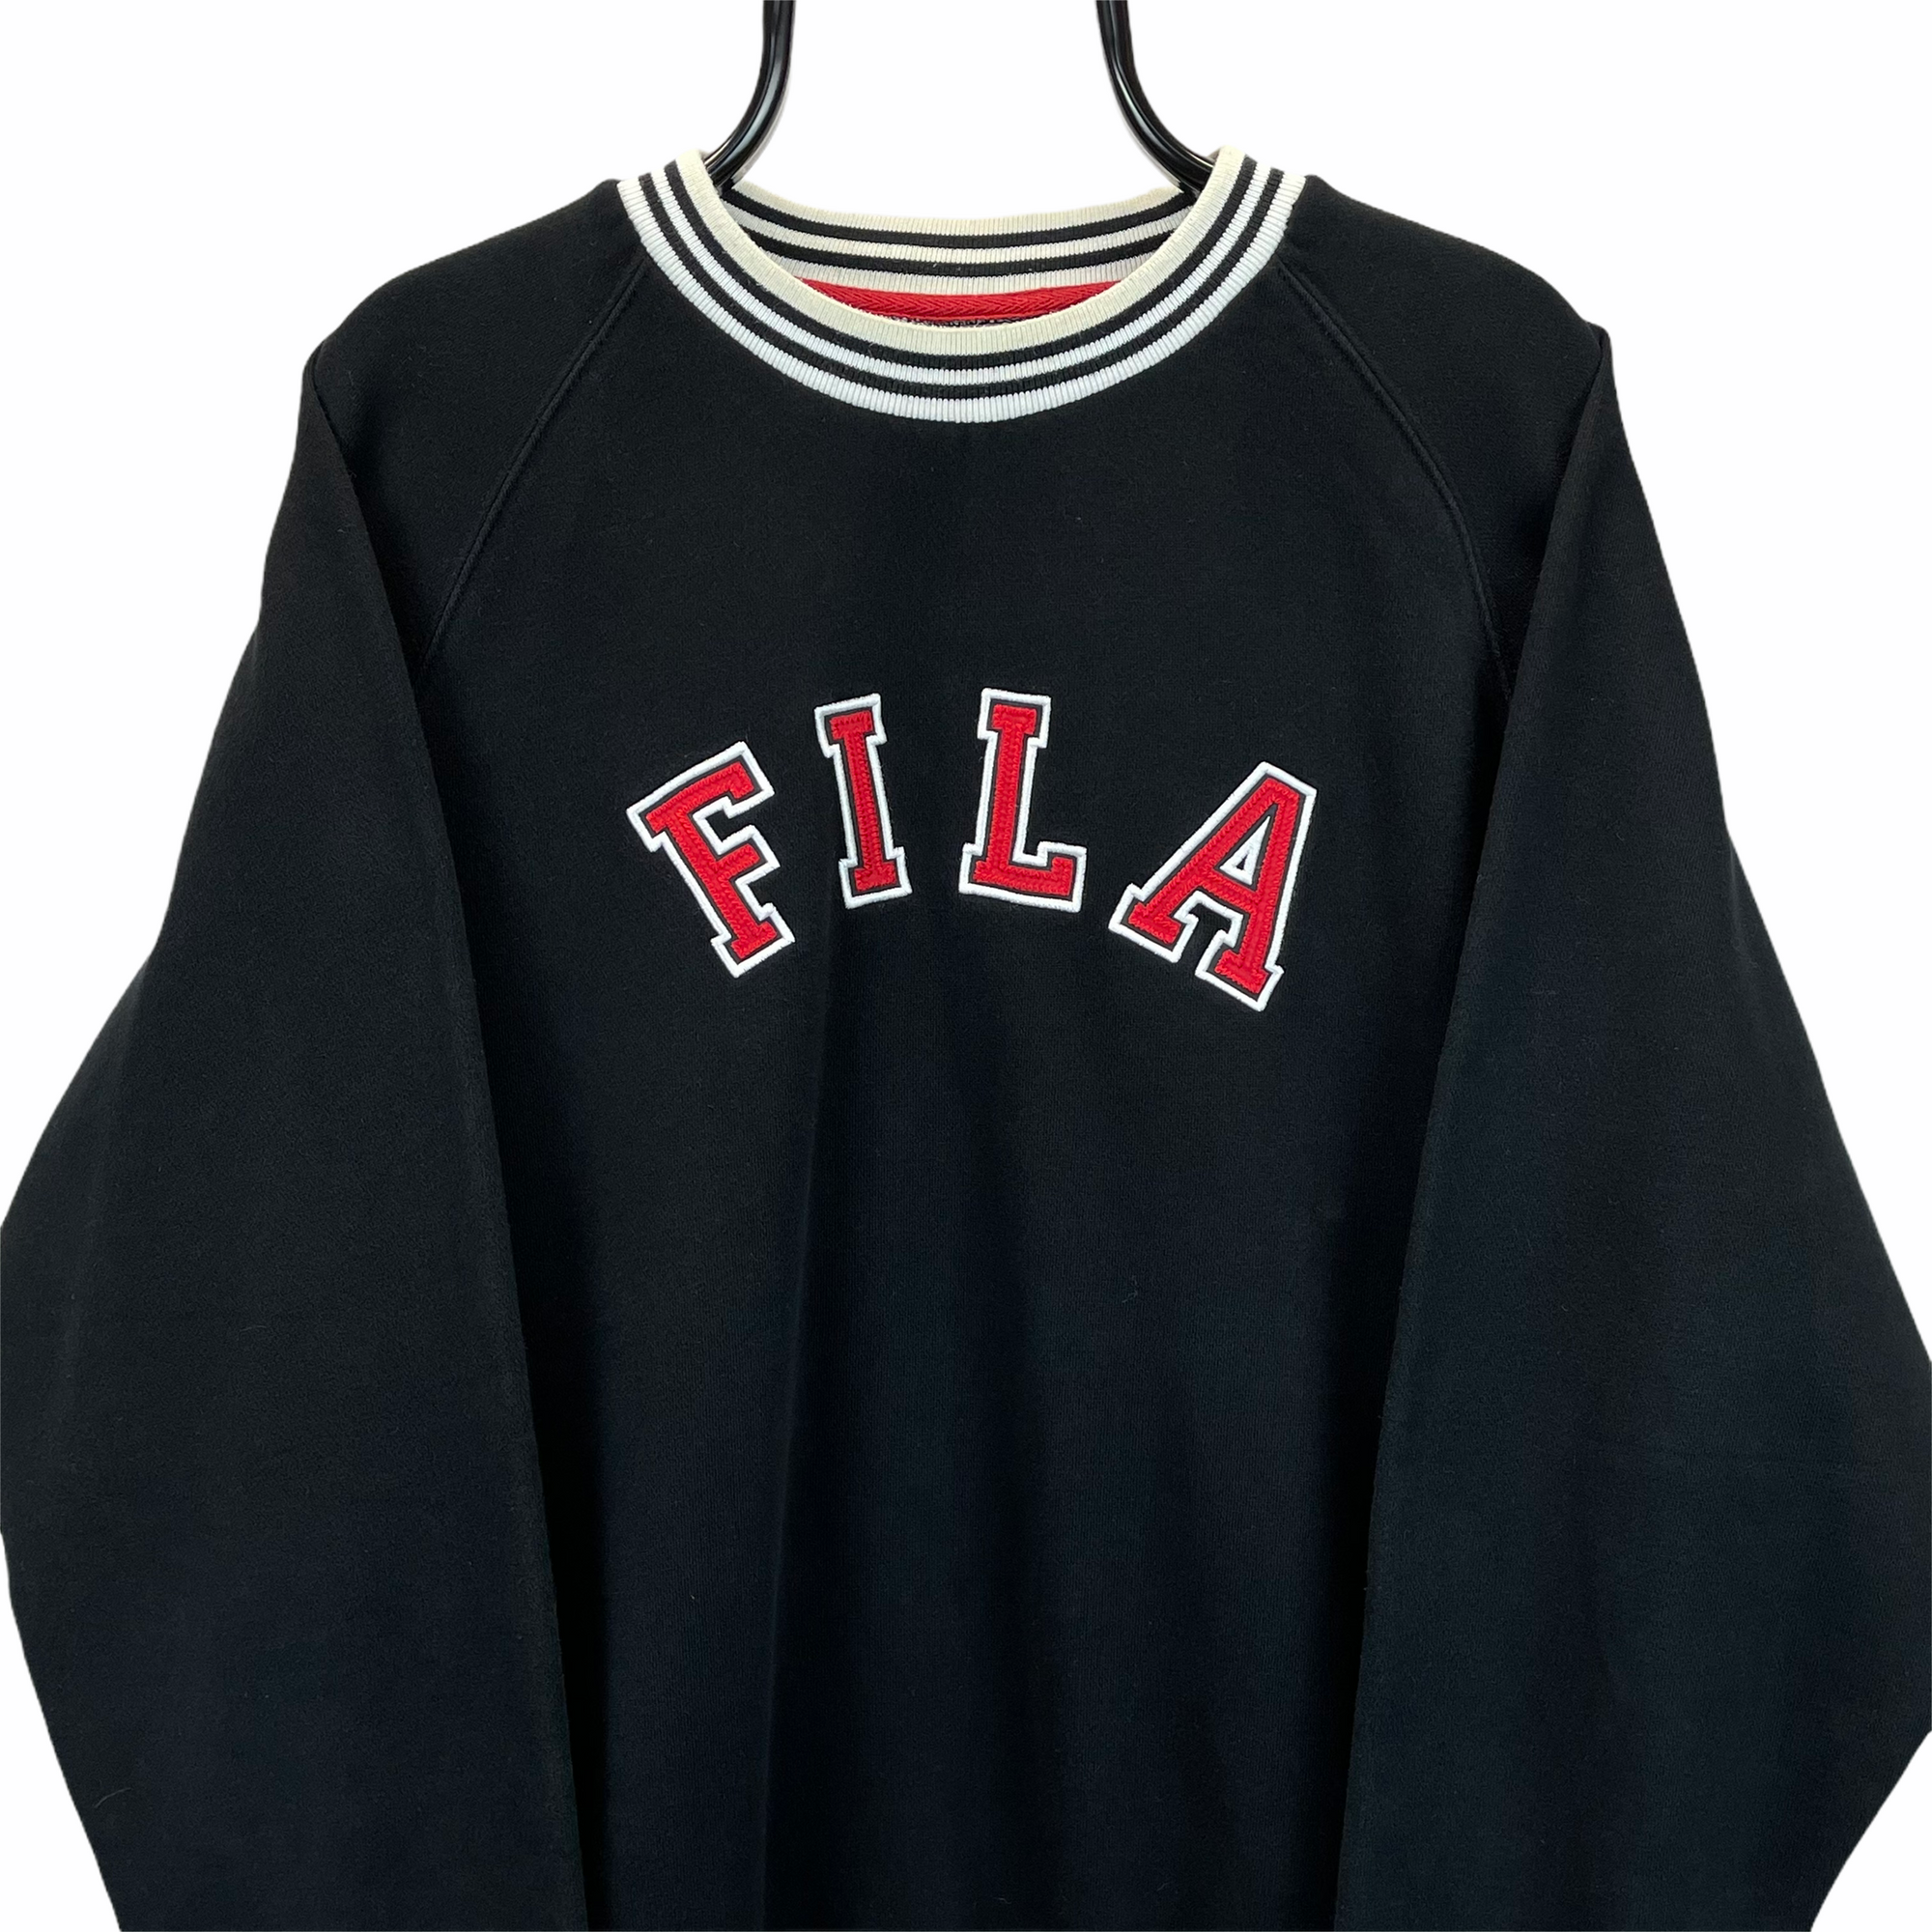 Vintage Fila Spellout Sweatshirt in Black & Red - Men's Large/Women's XL